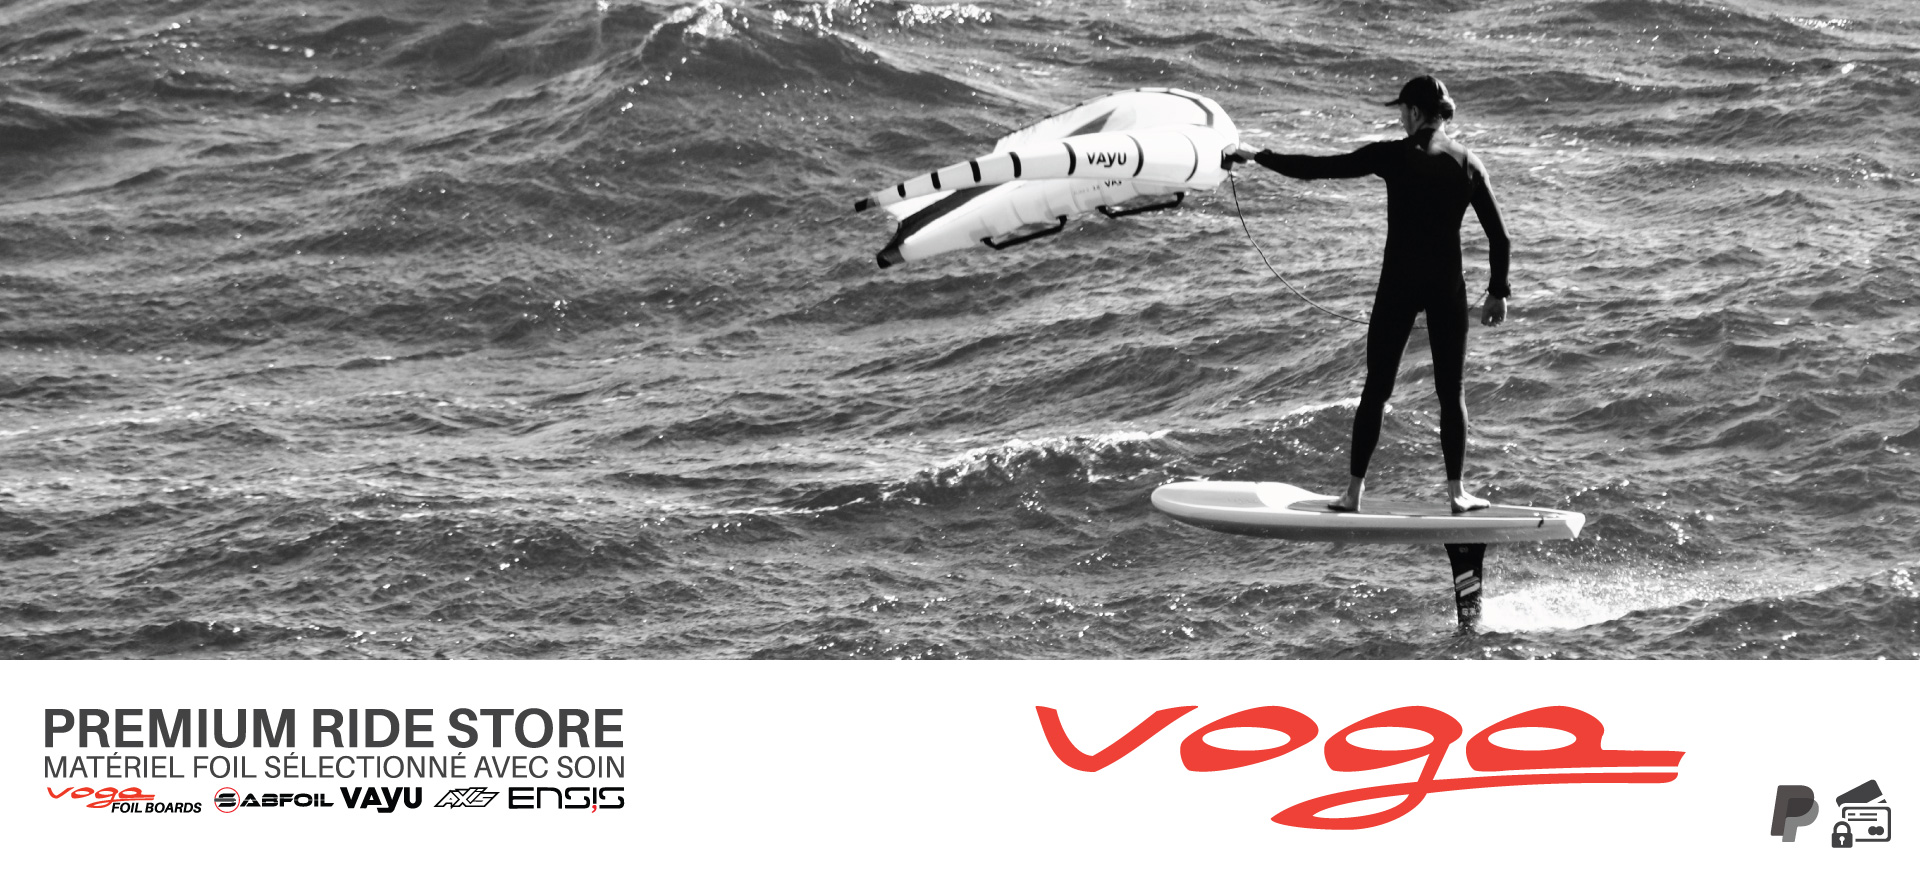 Voga Premium Ride Store planches de downwind wing foil sup foil voga marine